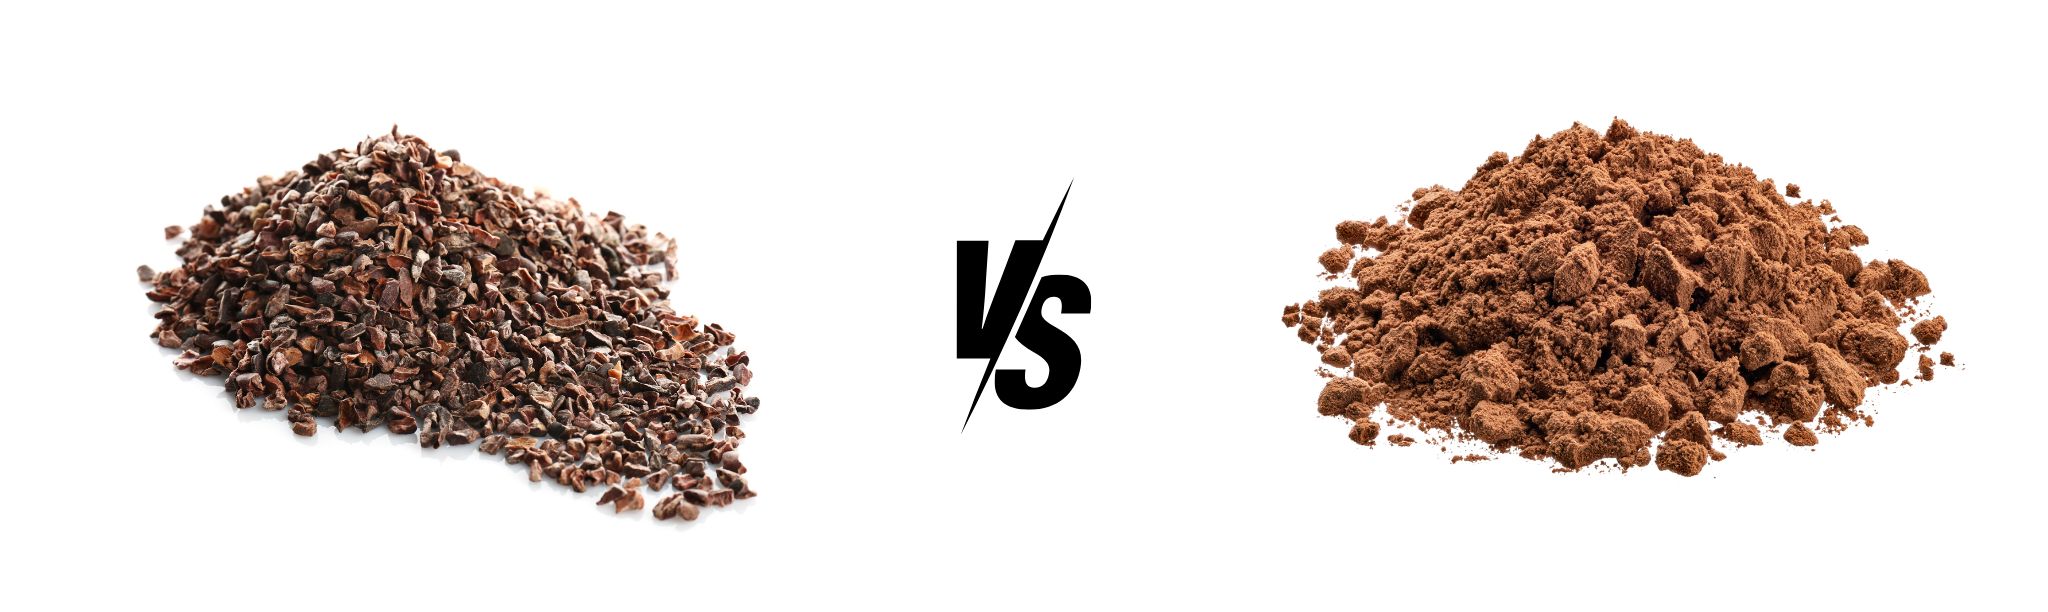 Cacao Nibs vs. Cocoa Powder